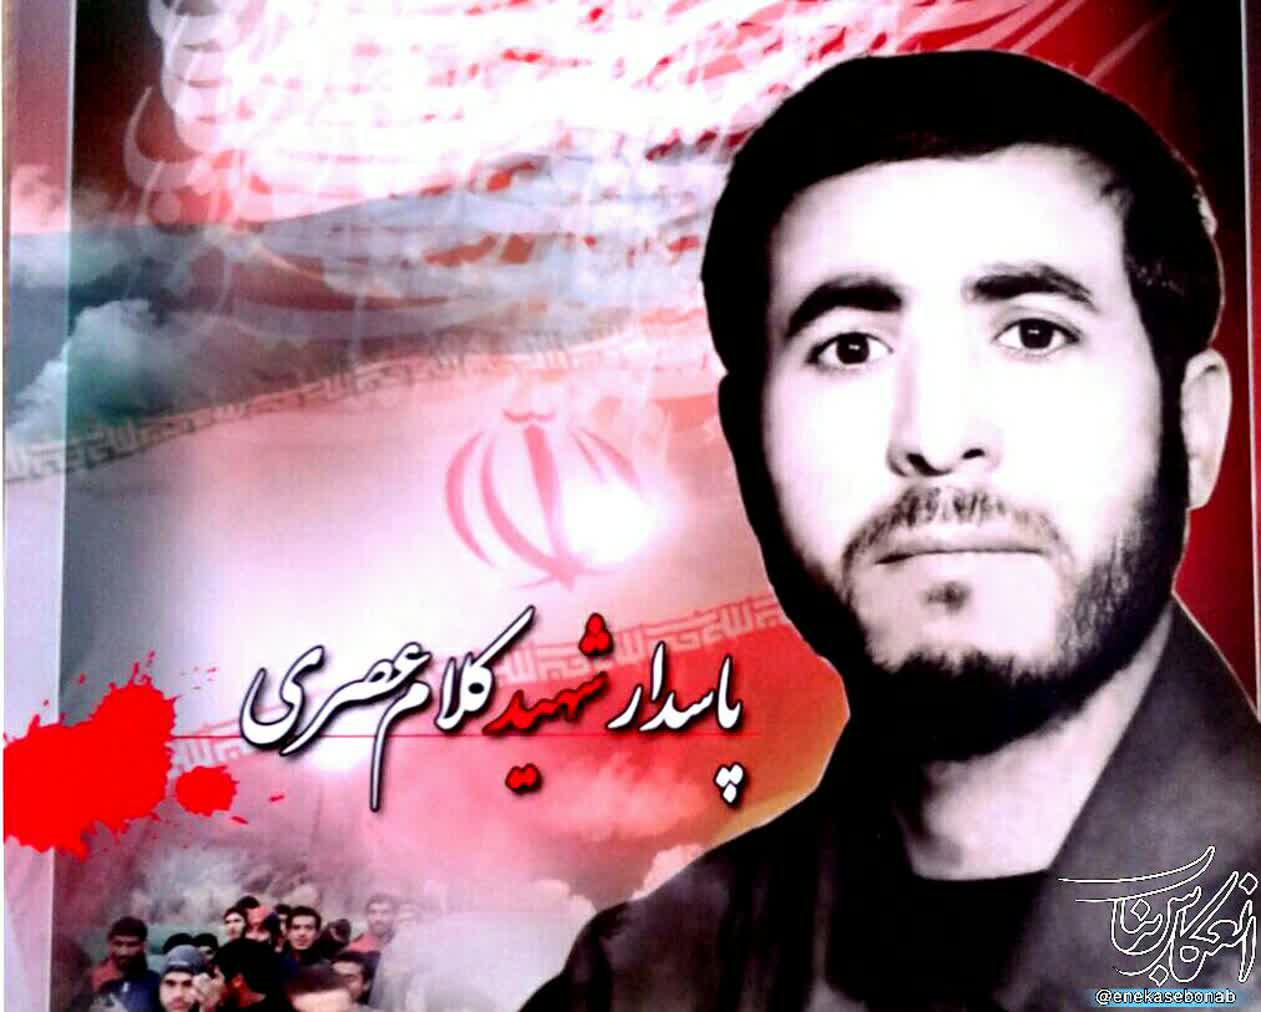 زندگینامه شهید کلام عصری/ تنها هدفم پیروزی و سرافرازی انقلاب است